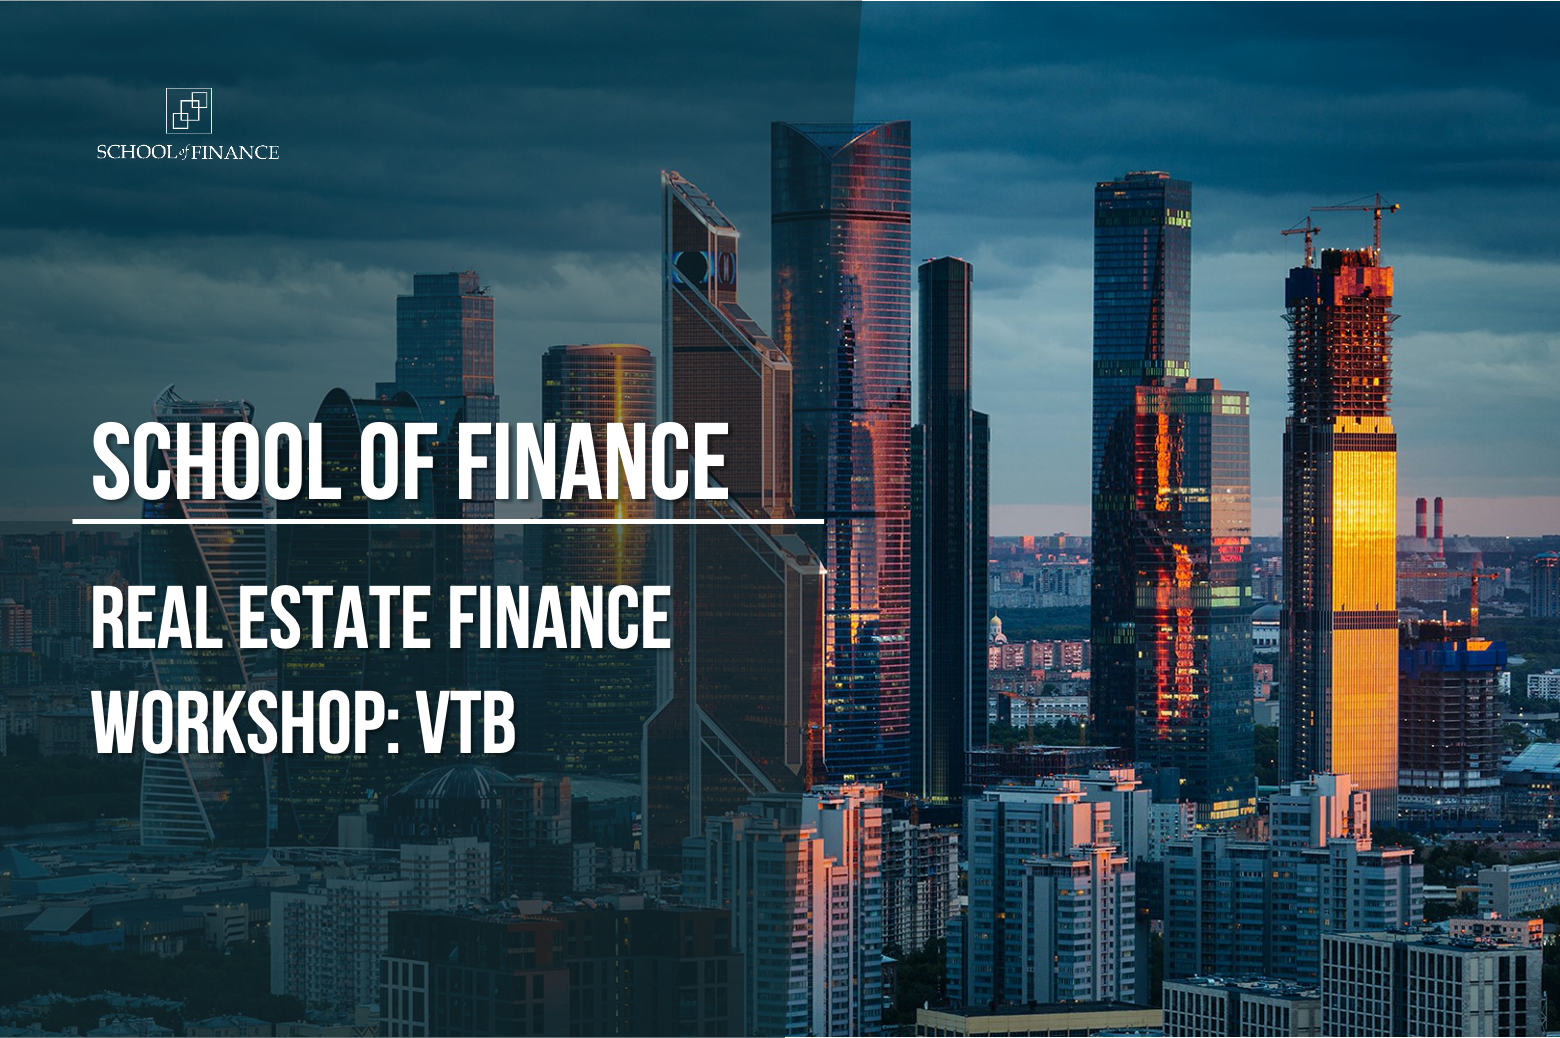 Real Estate Finance Insights: Мероприятие команды ВТБ в Школе финансов